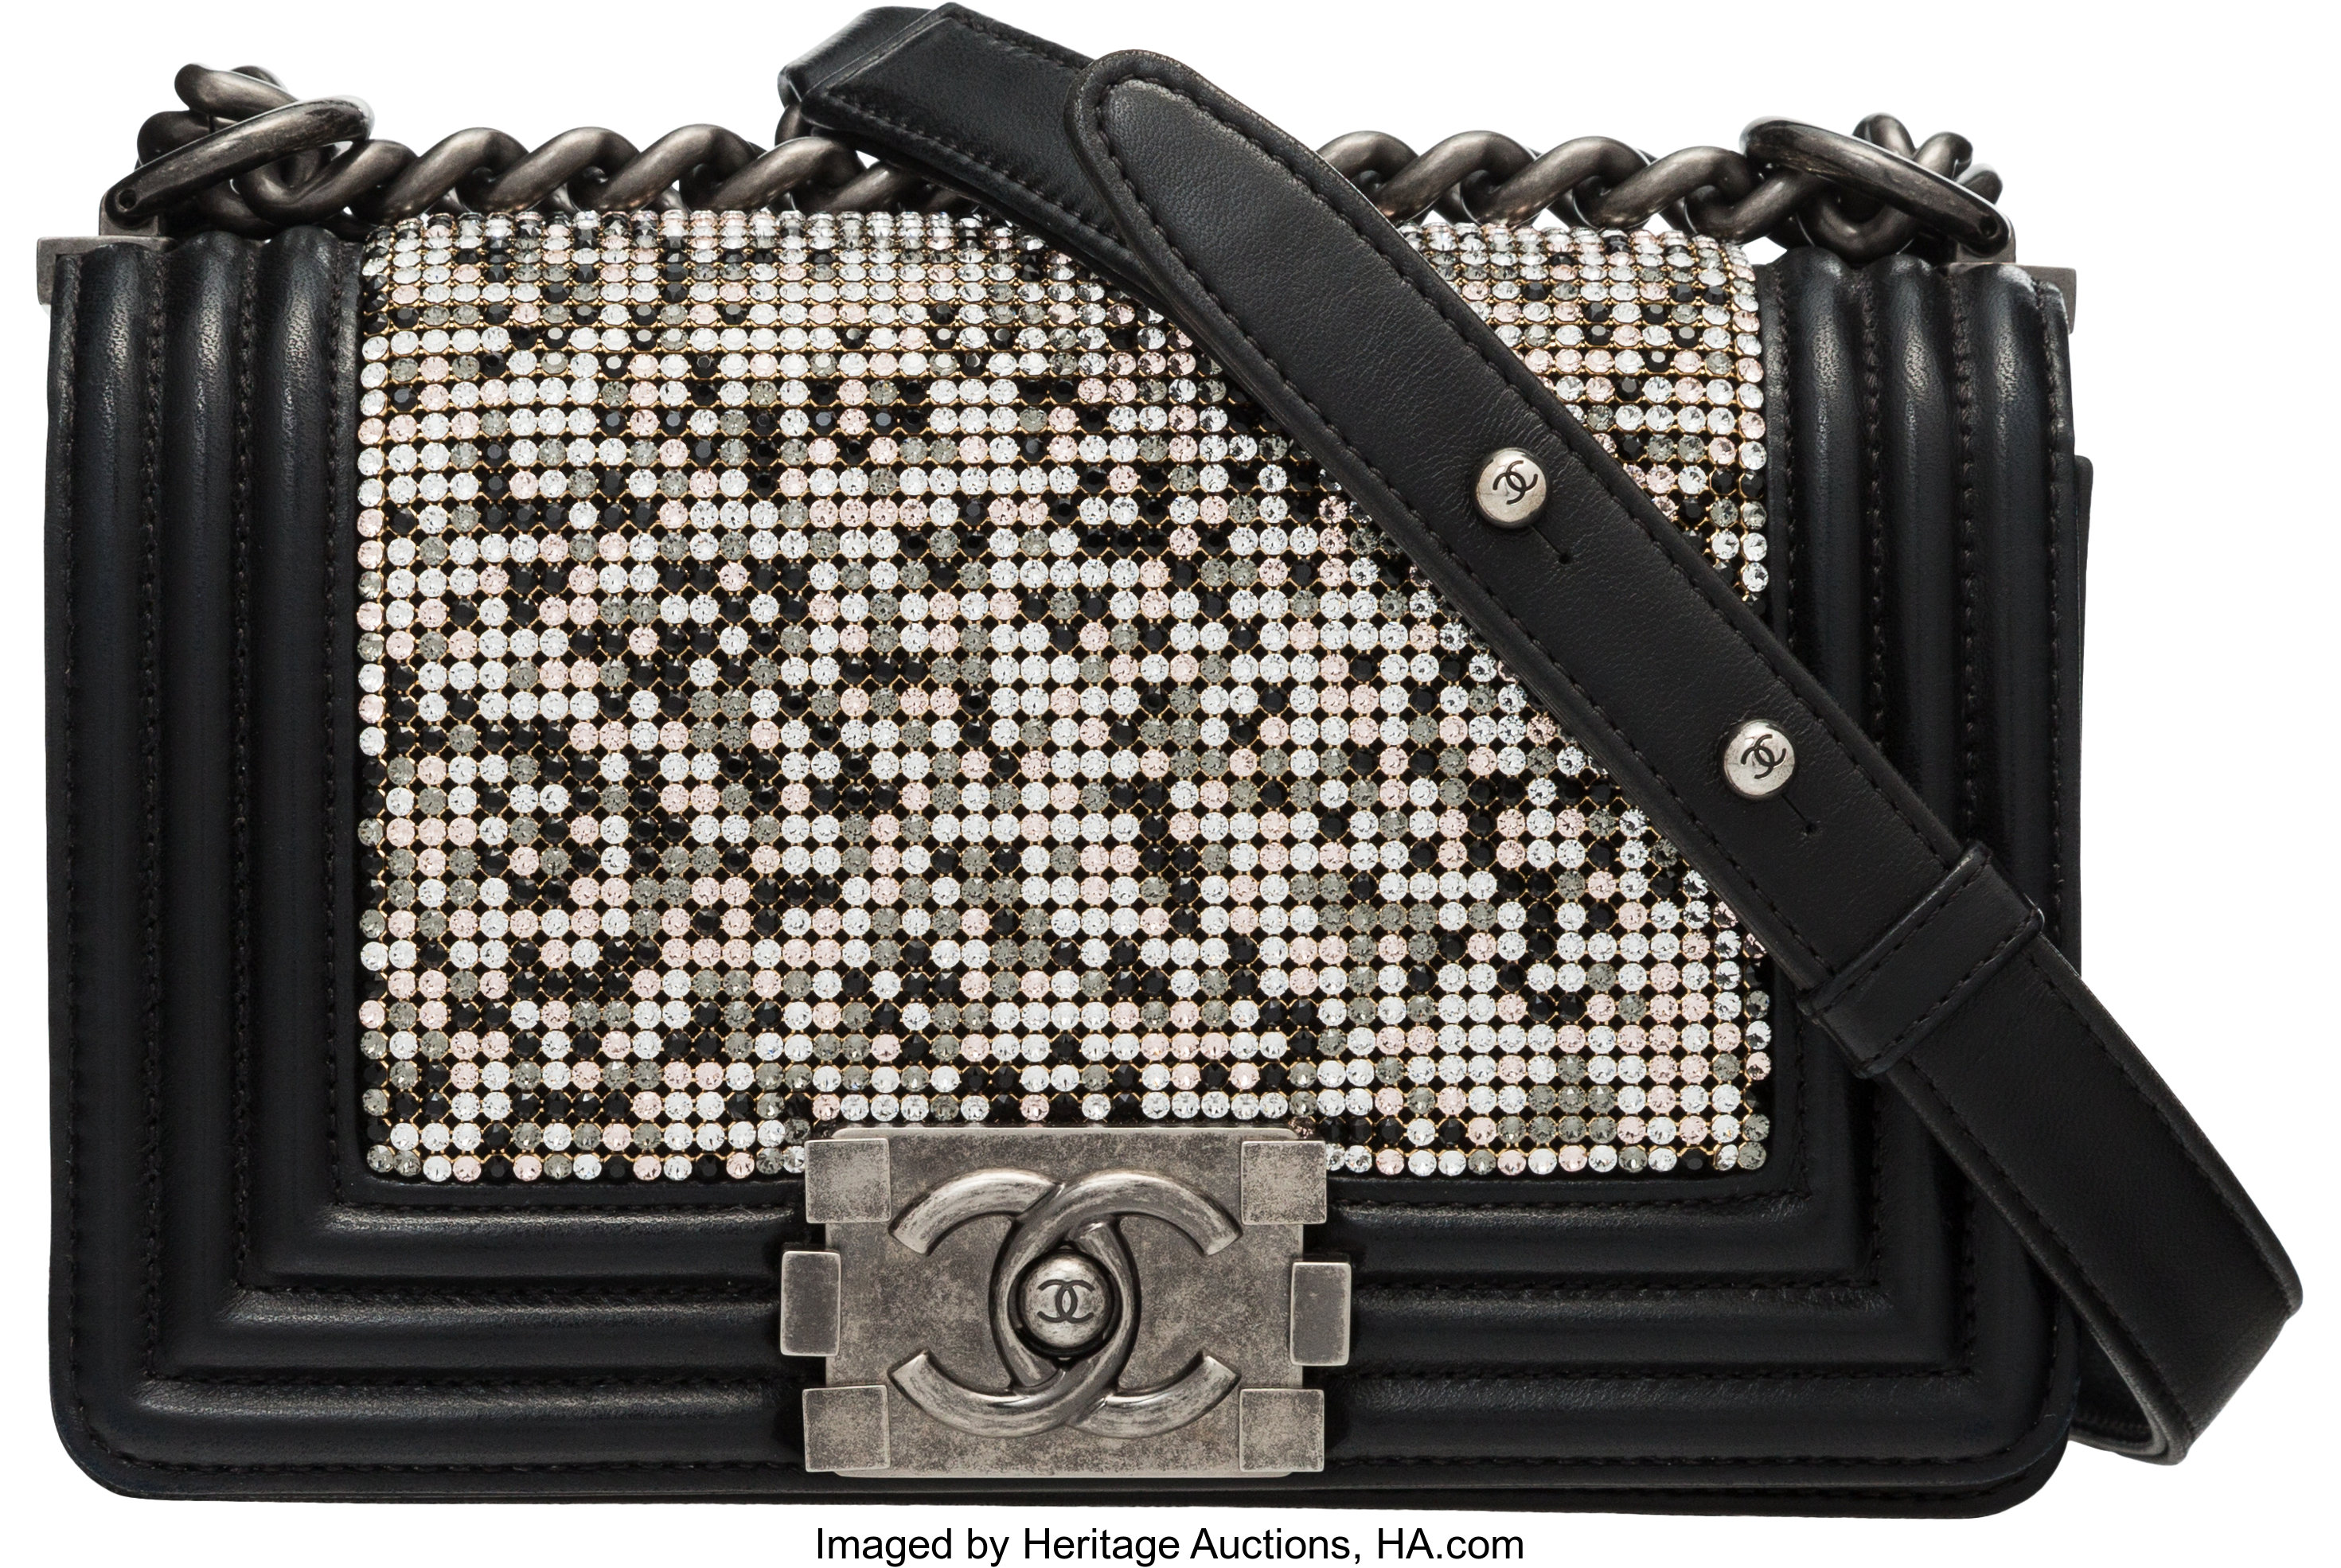 Chanel Swarovski Crystal & Black Lambskin Leather Small Boy Bag